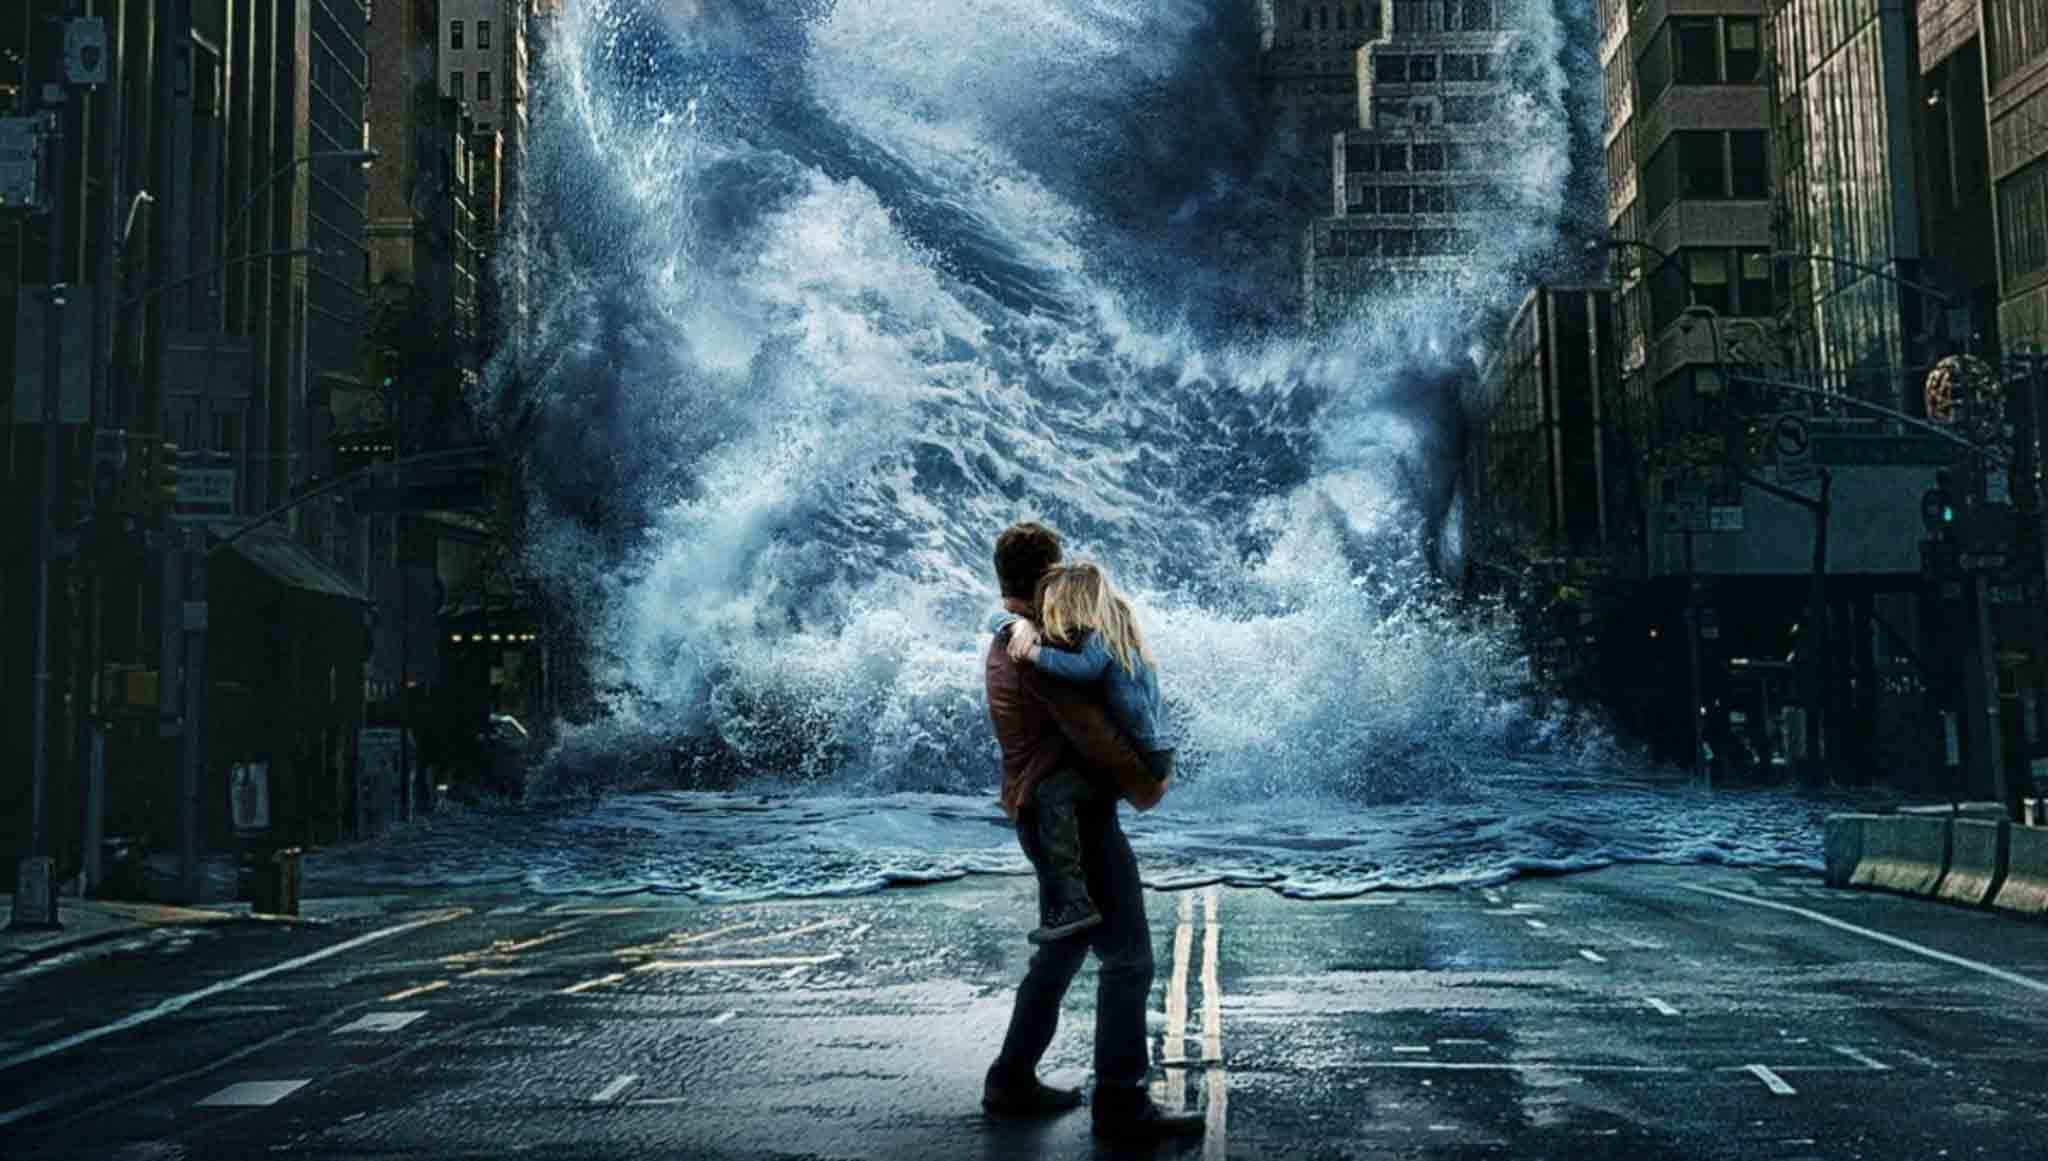 [Đánh giá phim] Geostorm - Siêu bão địa cầu thổi bay cảm xúc